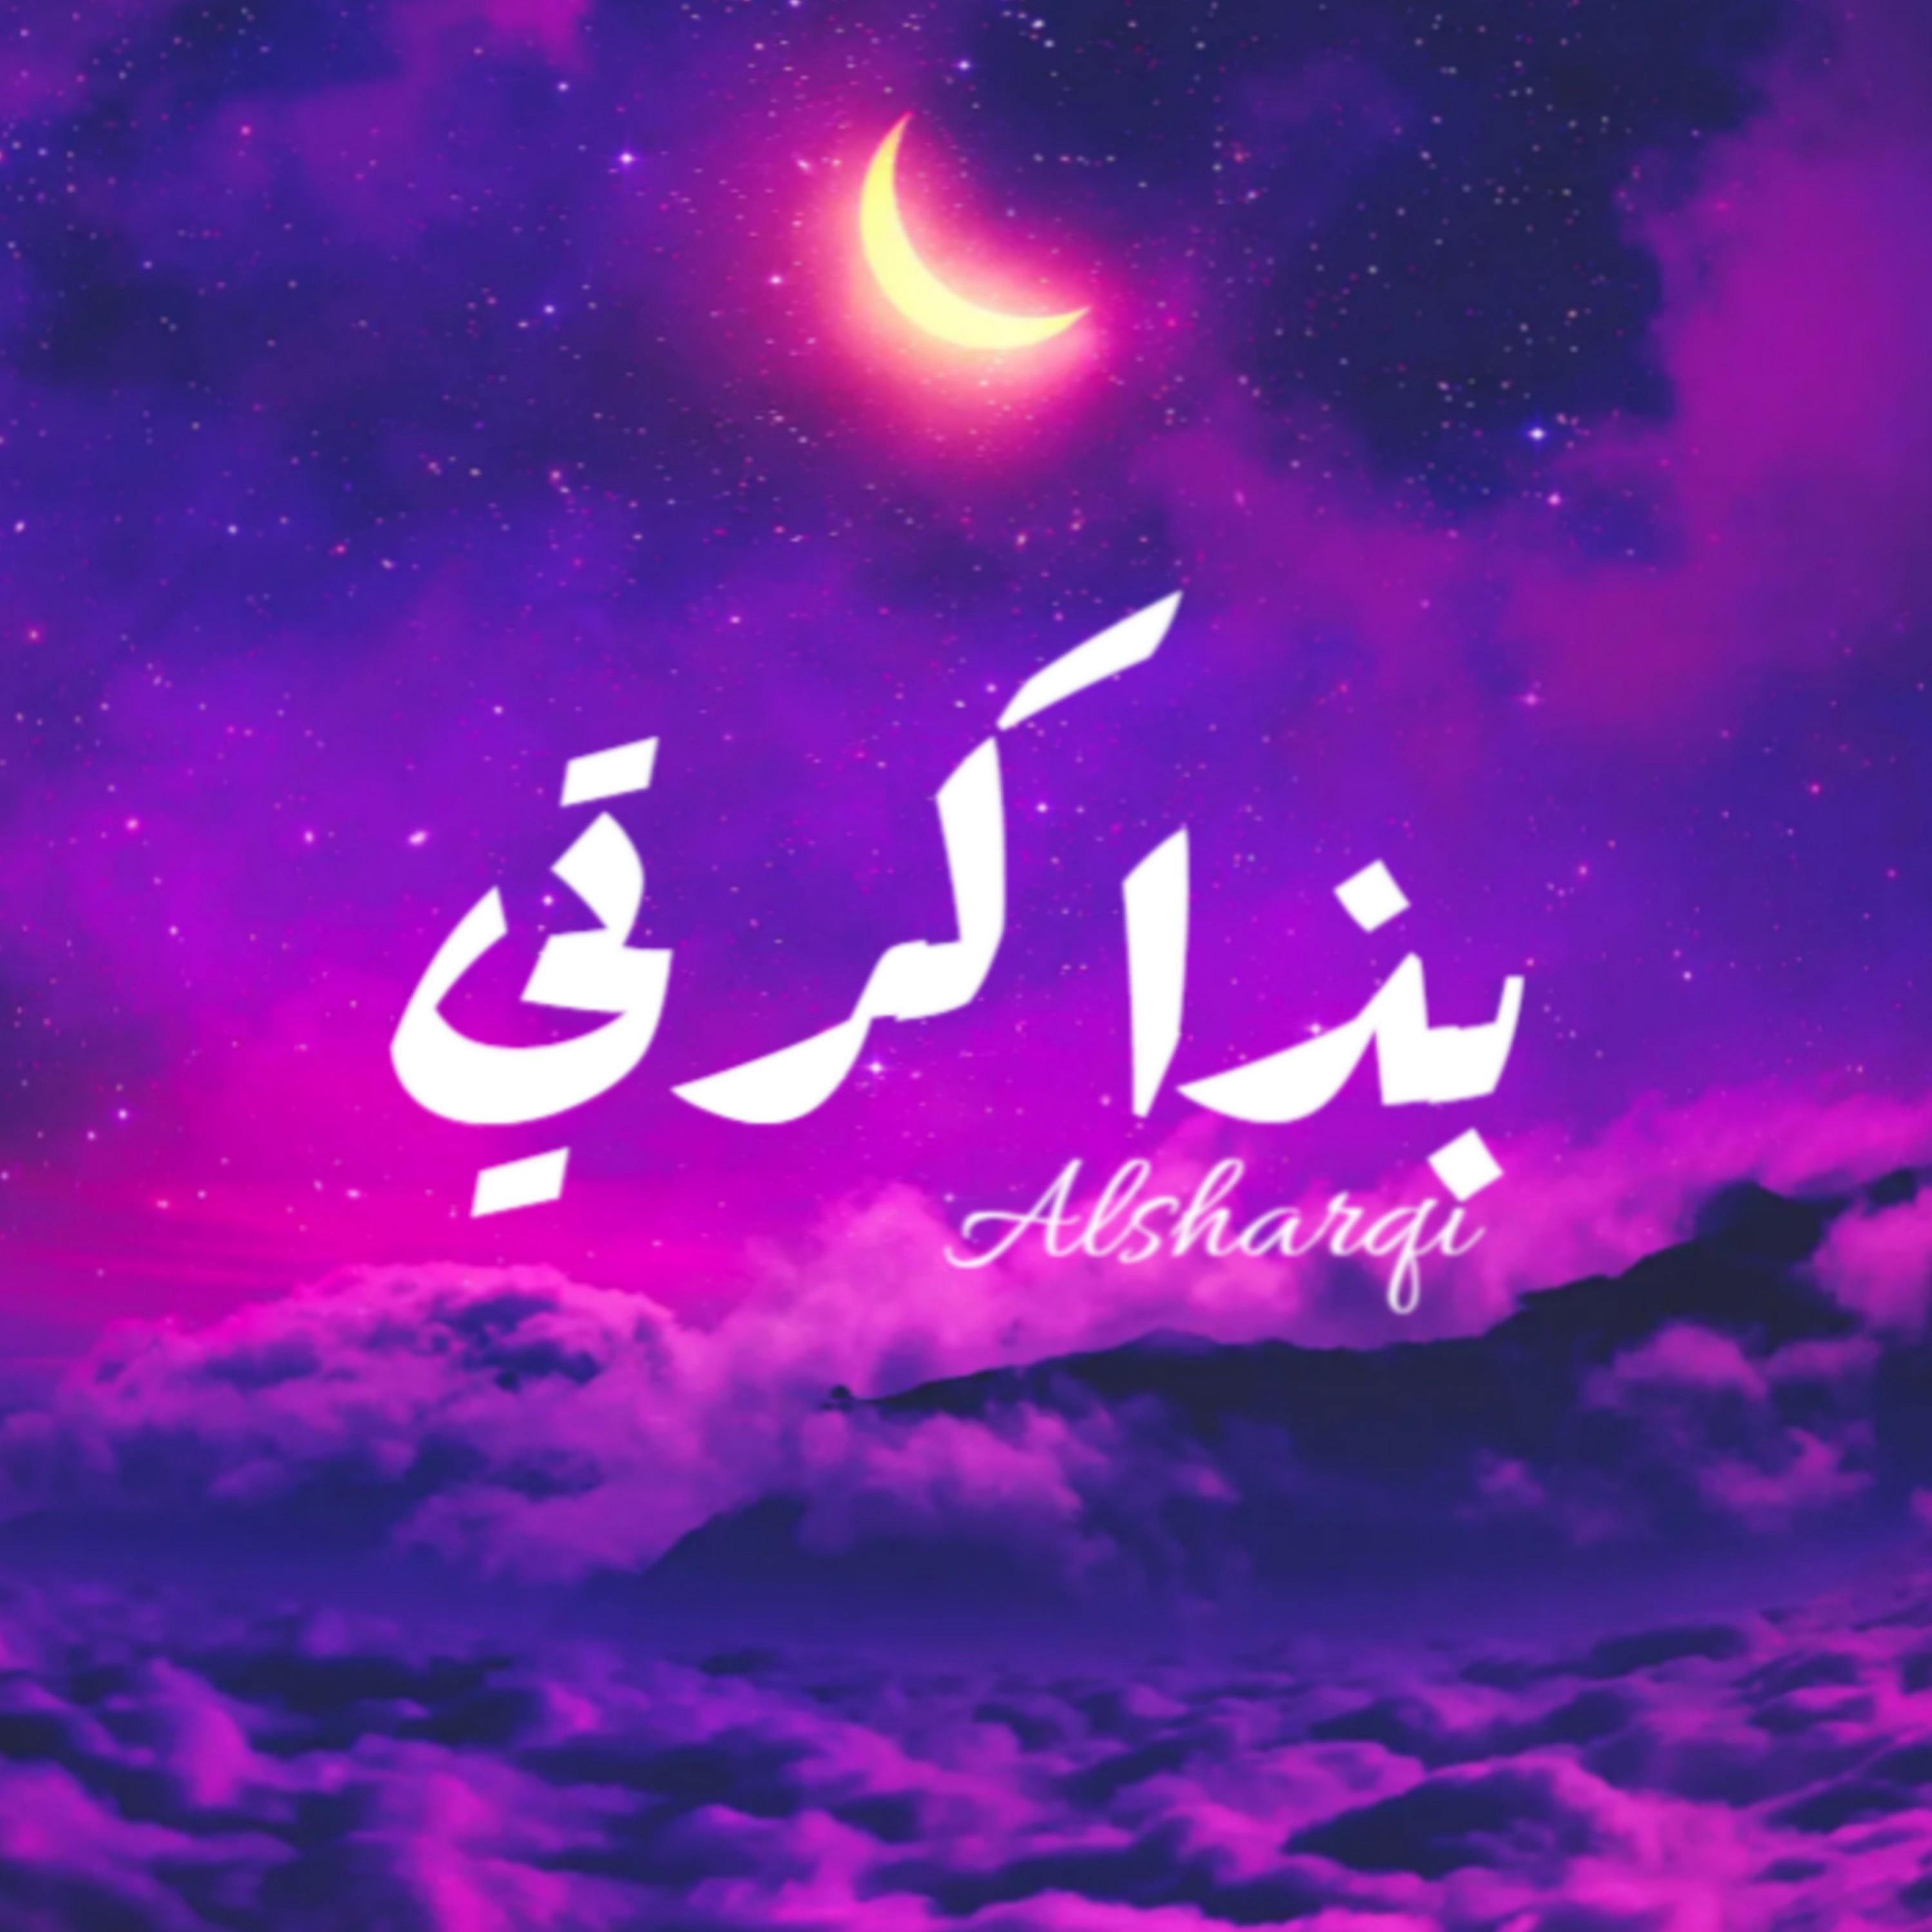 Alsharqi - بذاكرتي